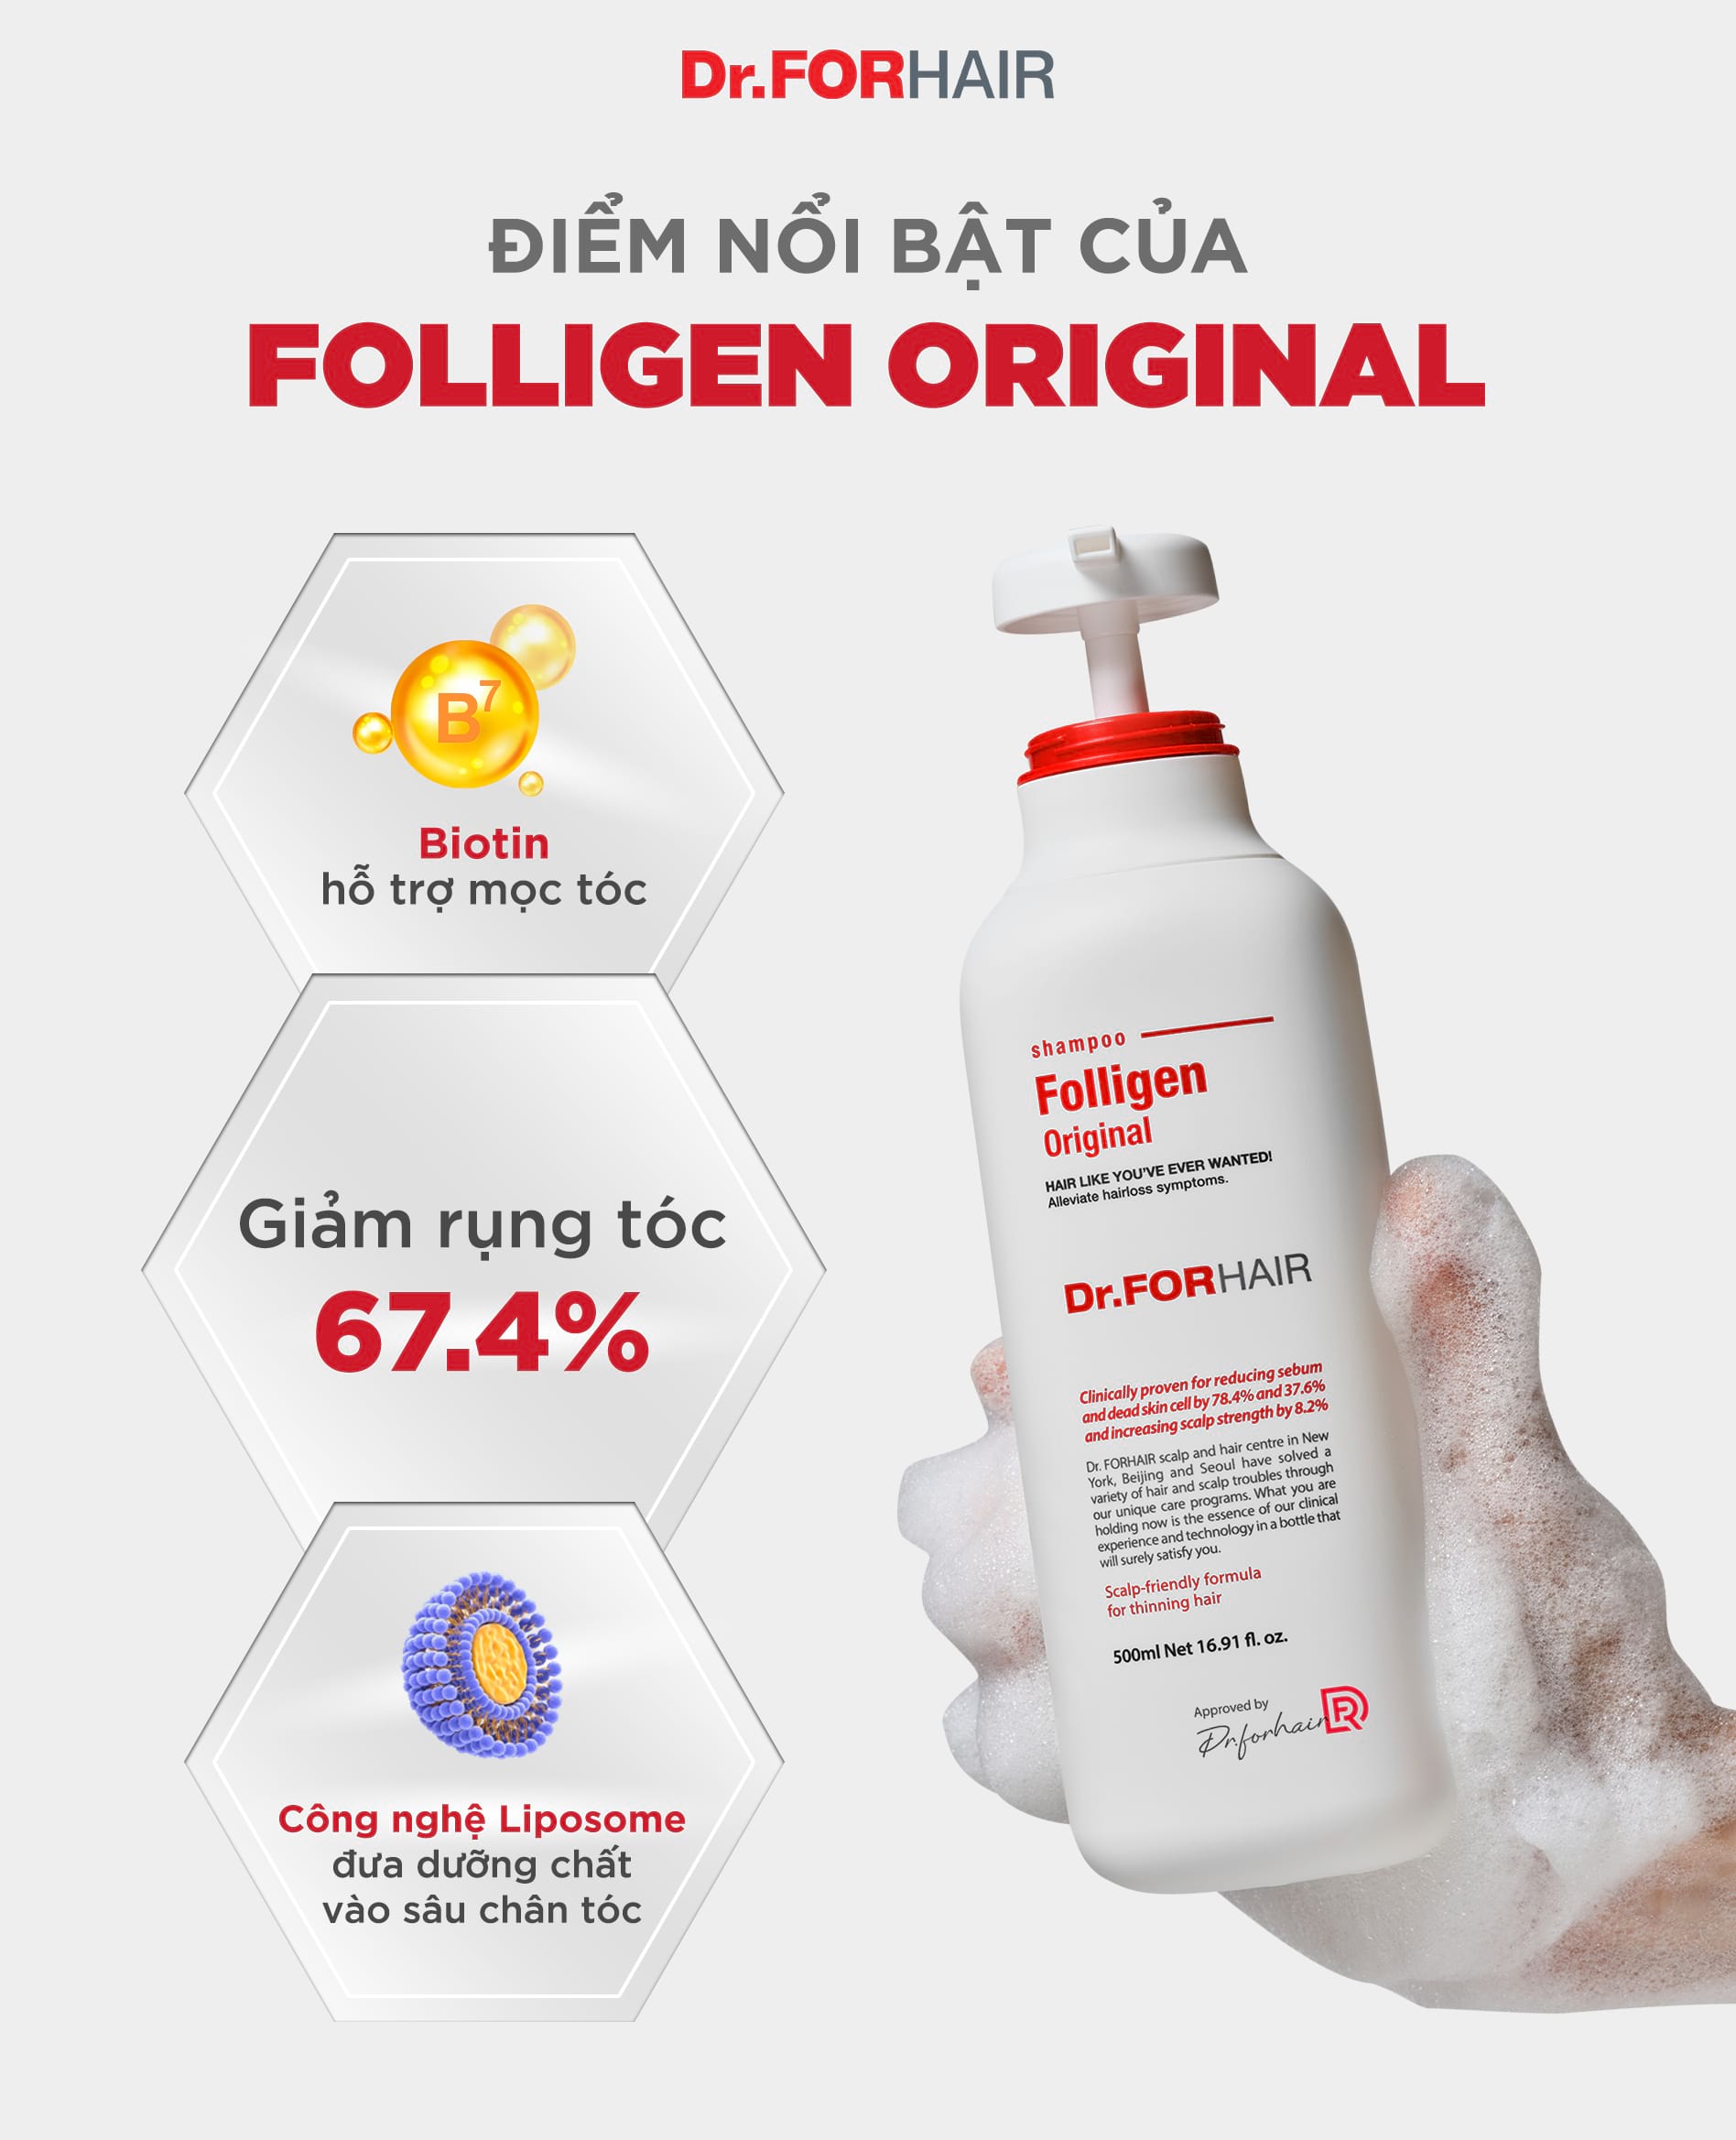 Dầu gội Dr.FORHAIR Folligen Original ngăn rụng tóc hiệu quả lên đến 67.4%